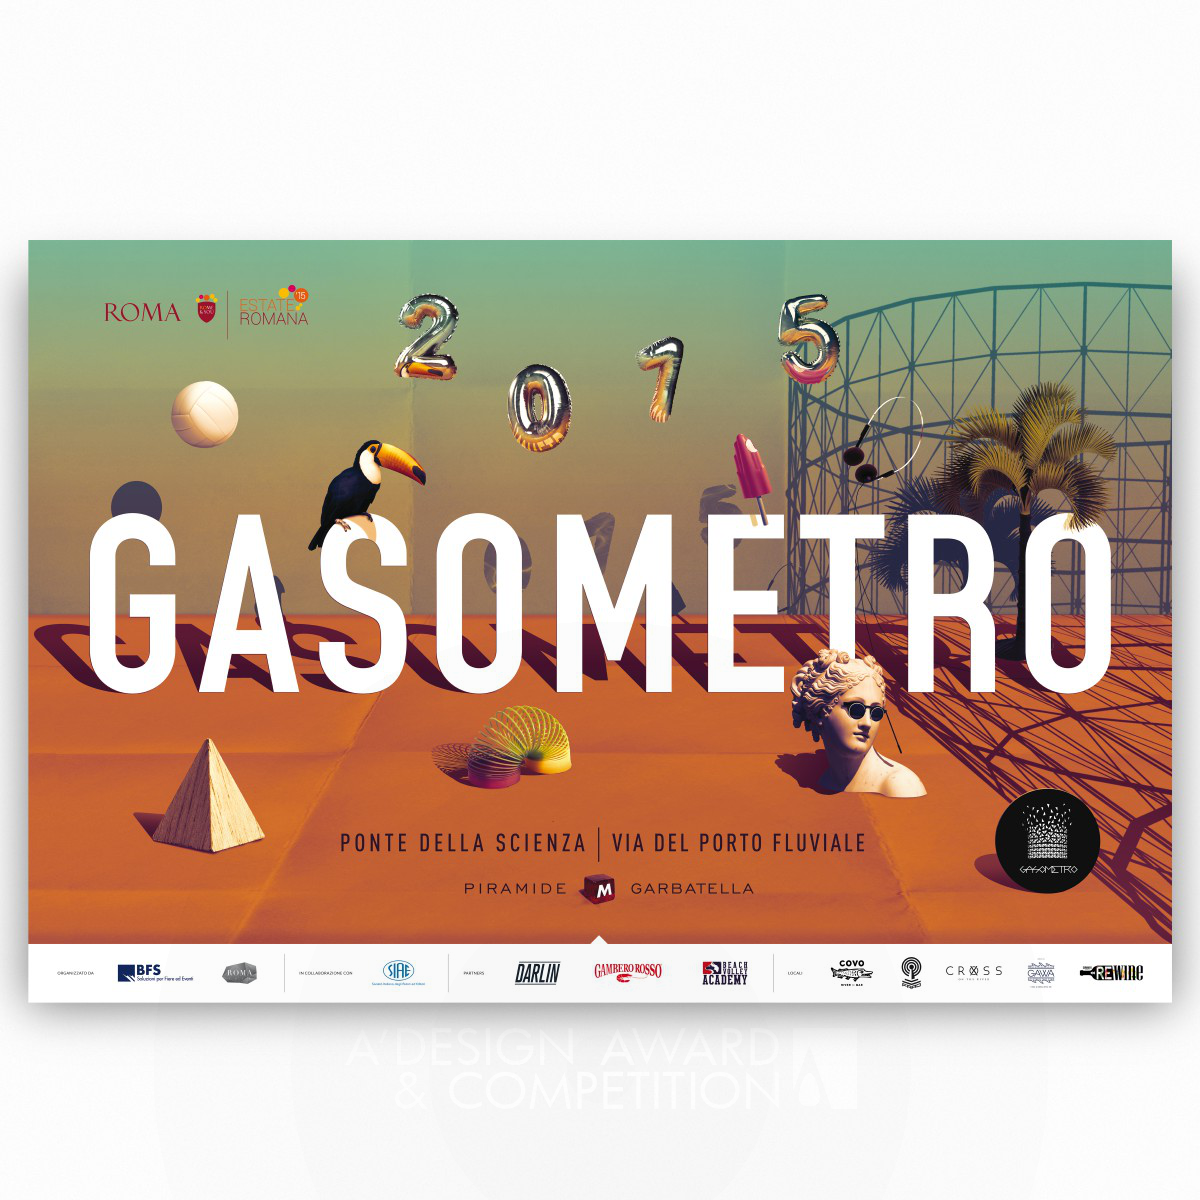 Gasometro 2015: A Surrealistic Summer in Rome